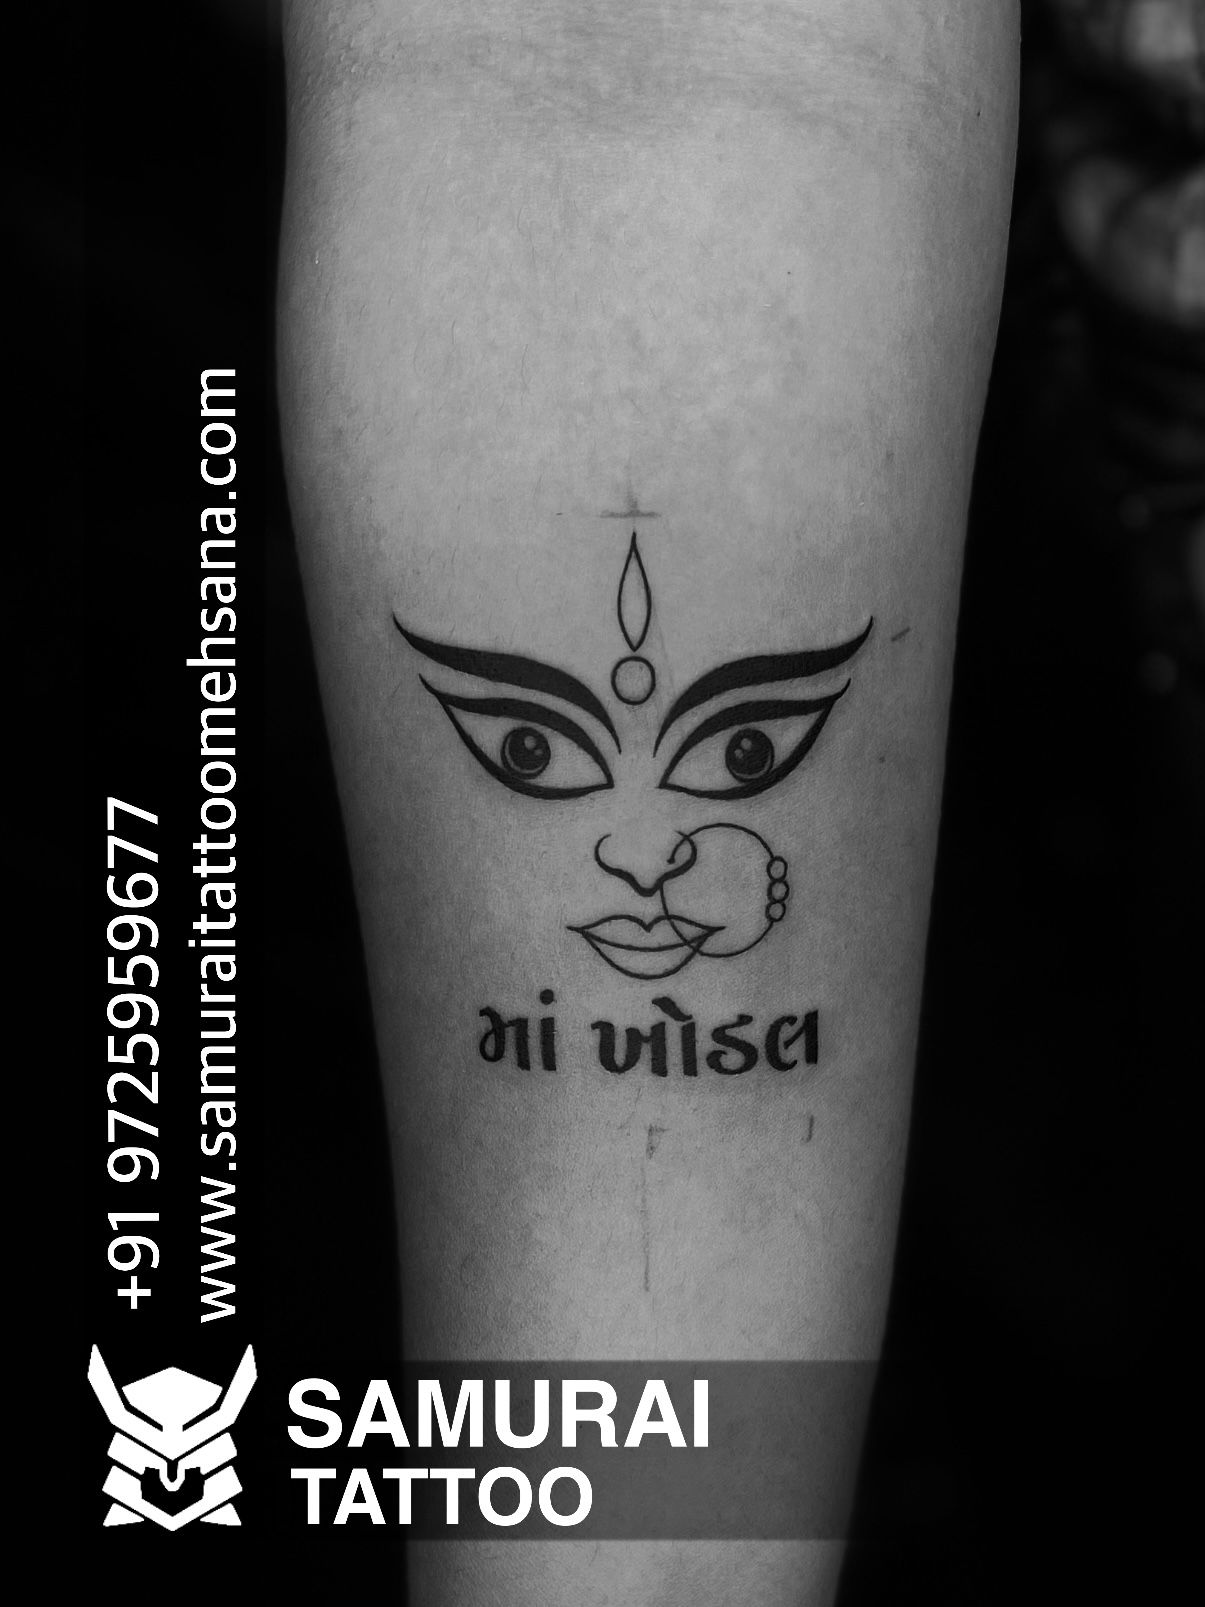 Kingsman tattoo (@Kingsmantattoos) / X